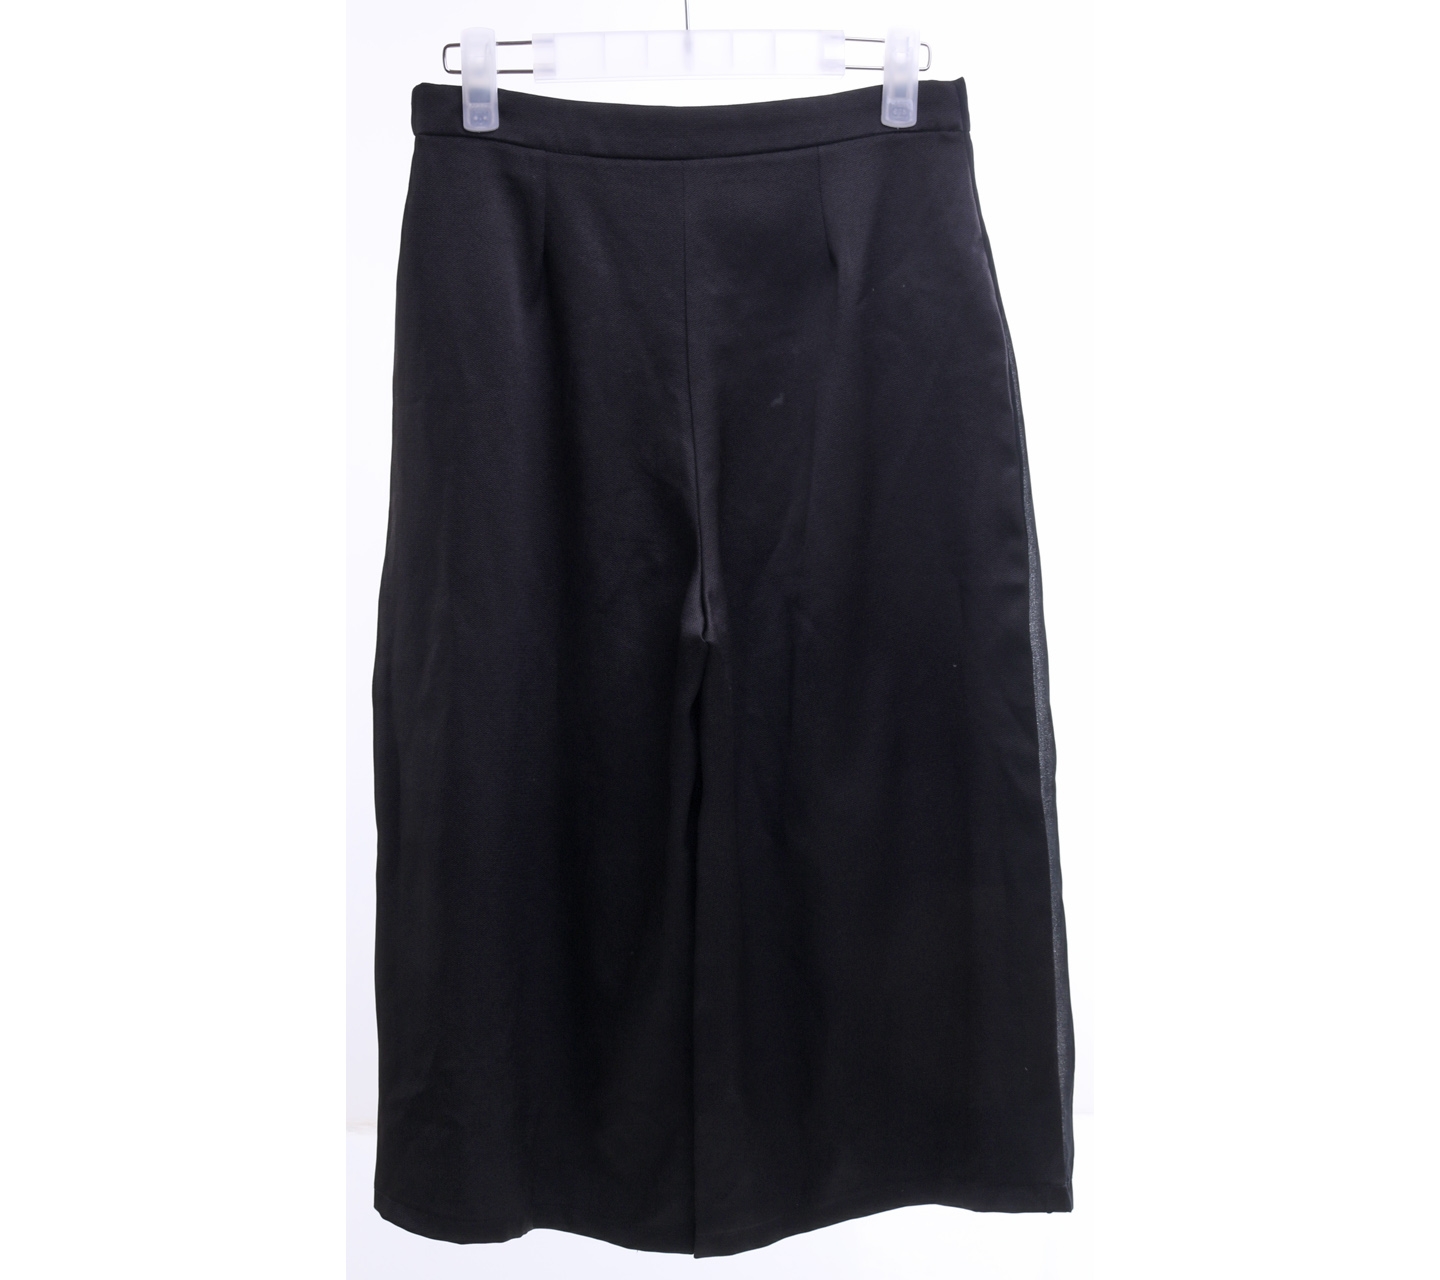 Blanik Black Wrap Skirt Cropped Pants